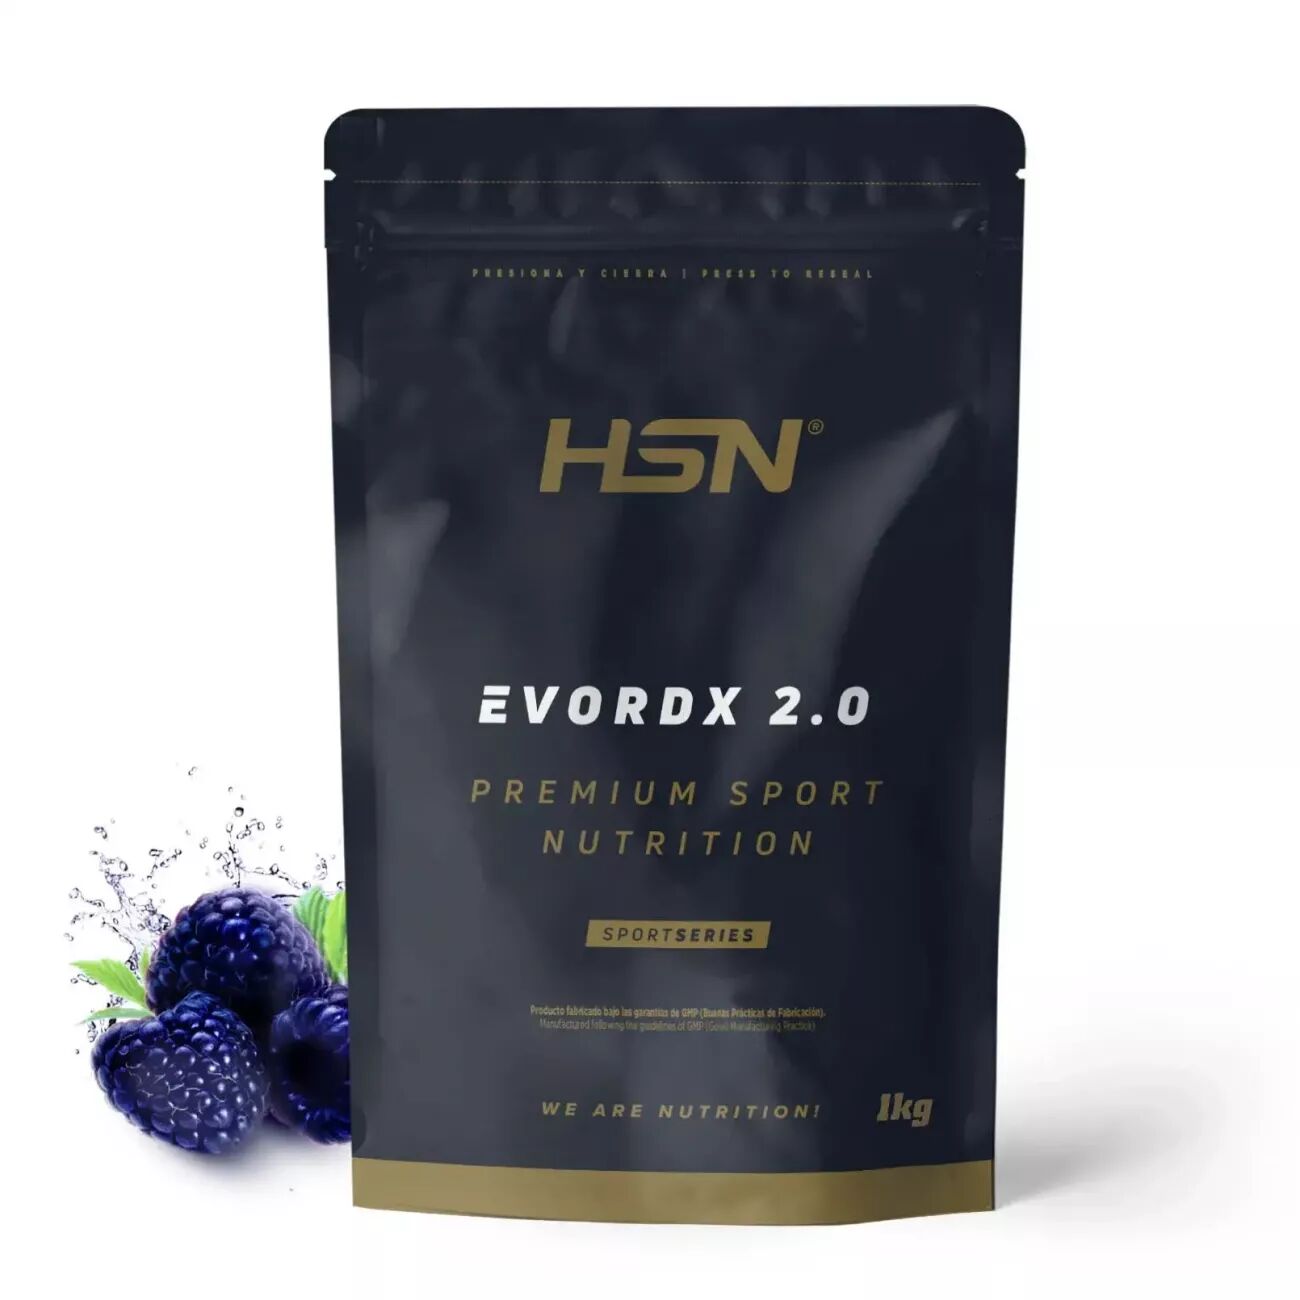 HSN Evordx 2.0 1kg frambuesa azul